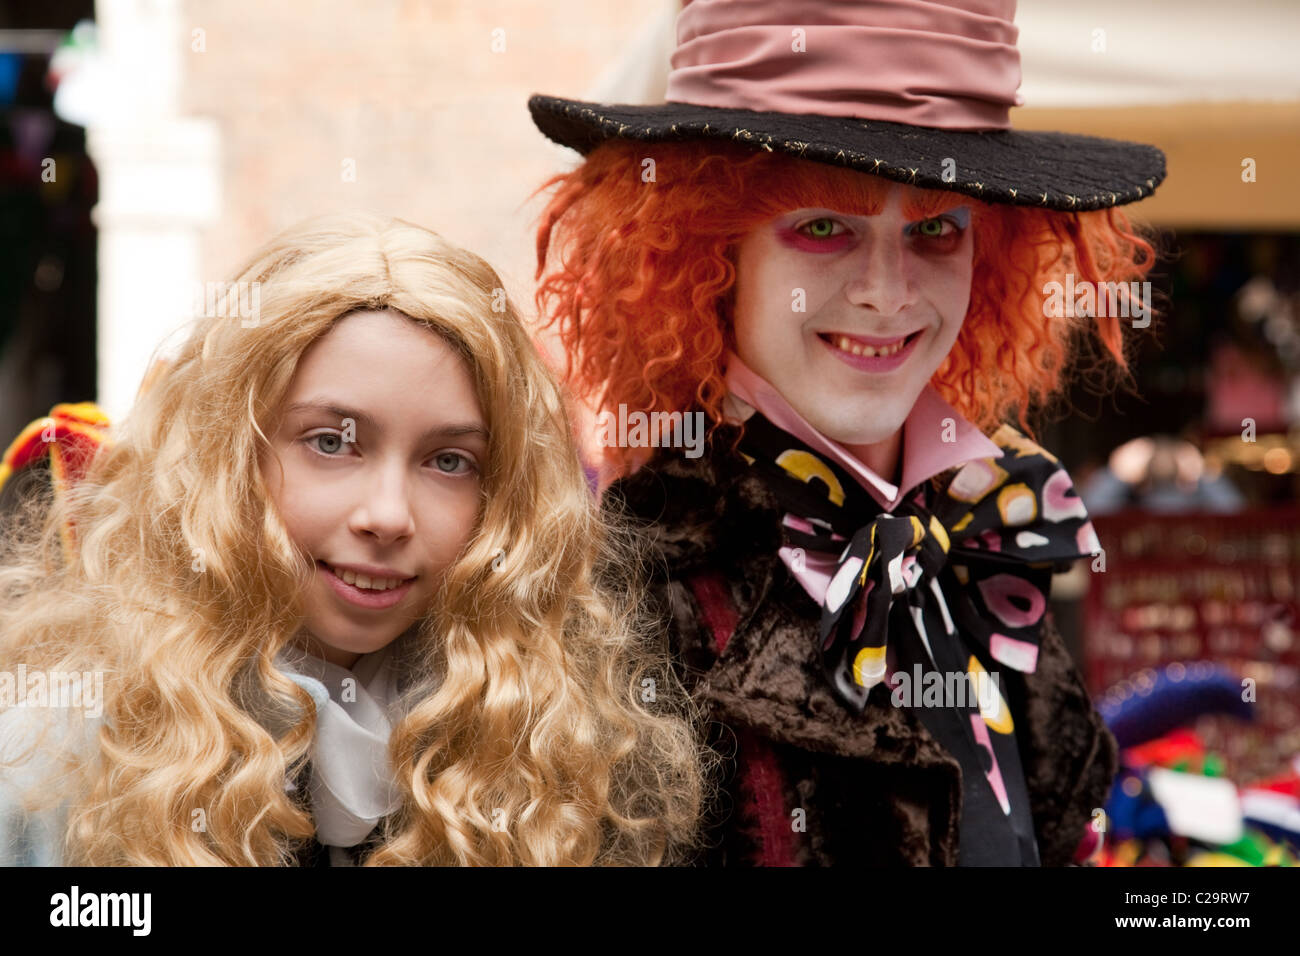 Zwei Personen in den Kostümen von Alice im Wunderland Zeichen - Alice und dem verrückten Hutmacher, der Karneval, Venedig, Italien Stockfoto